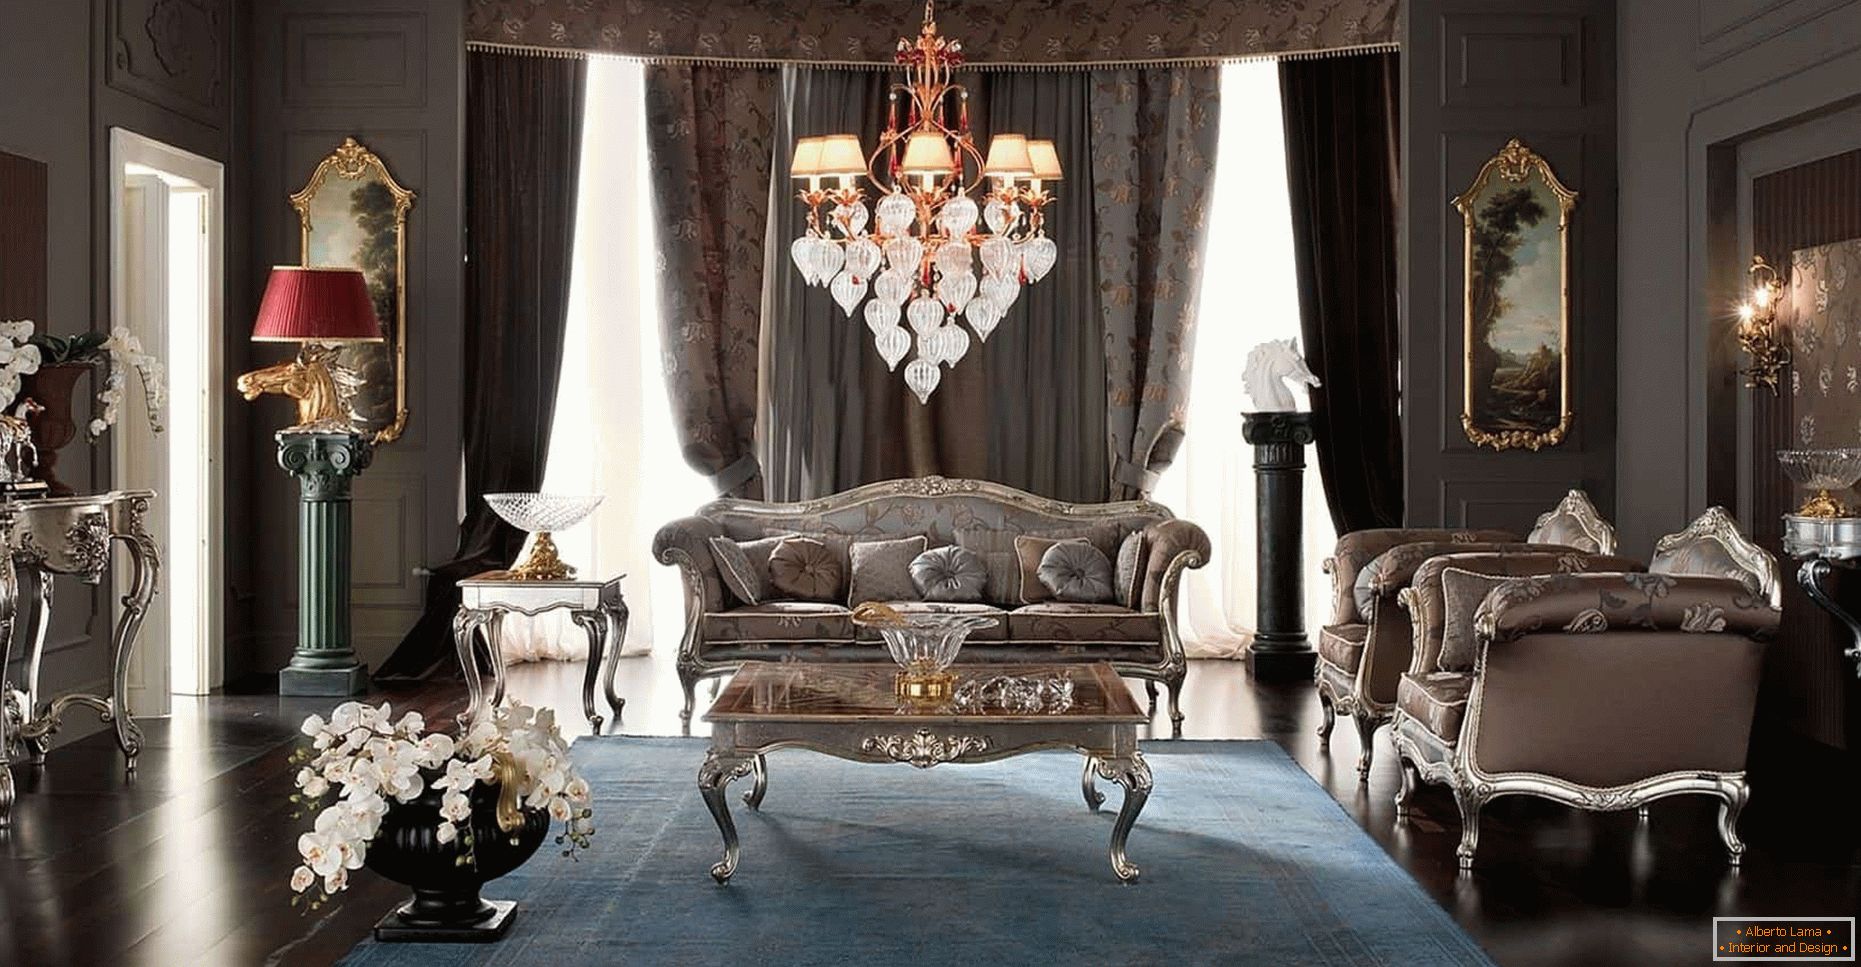 Дизајн дневне собе у тамној боји у класичном стилу